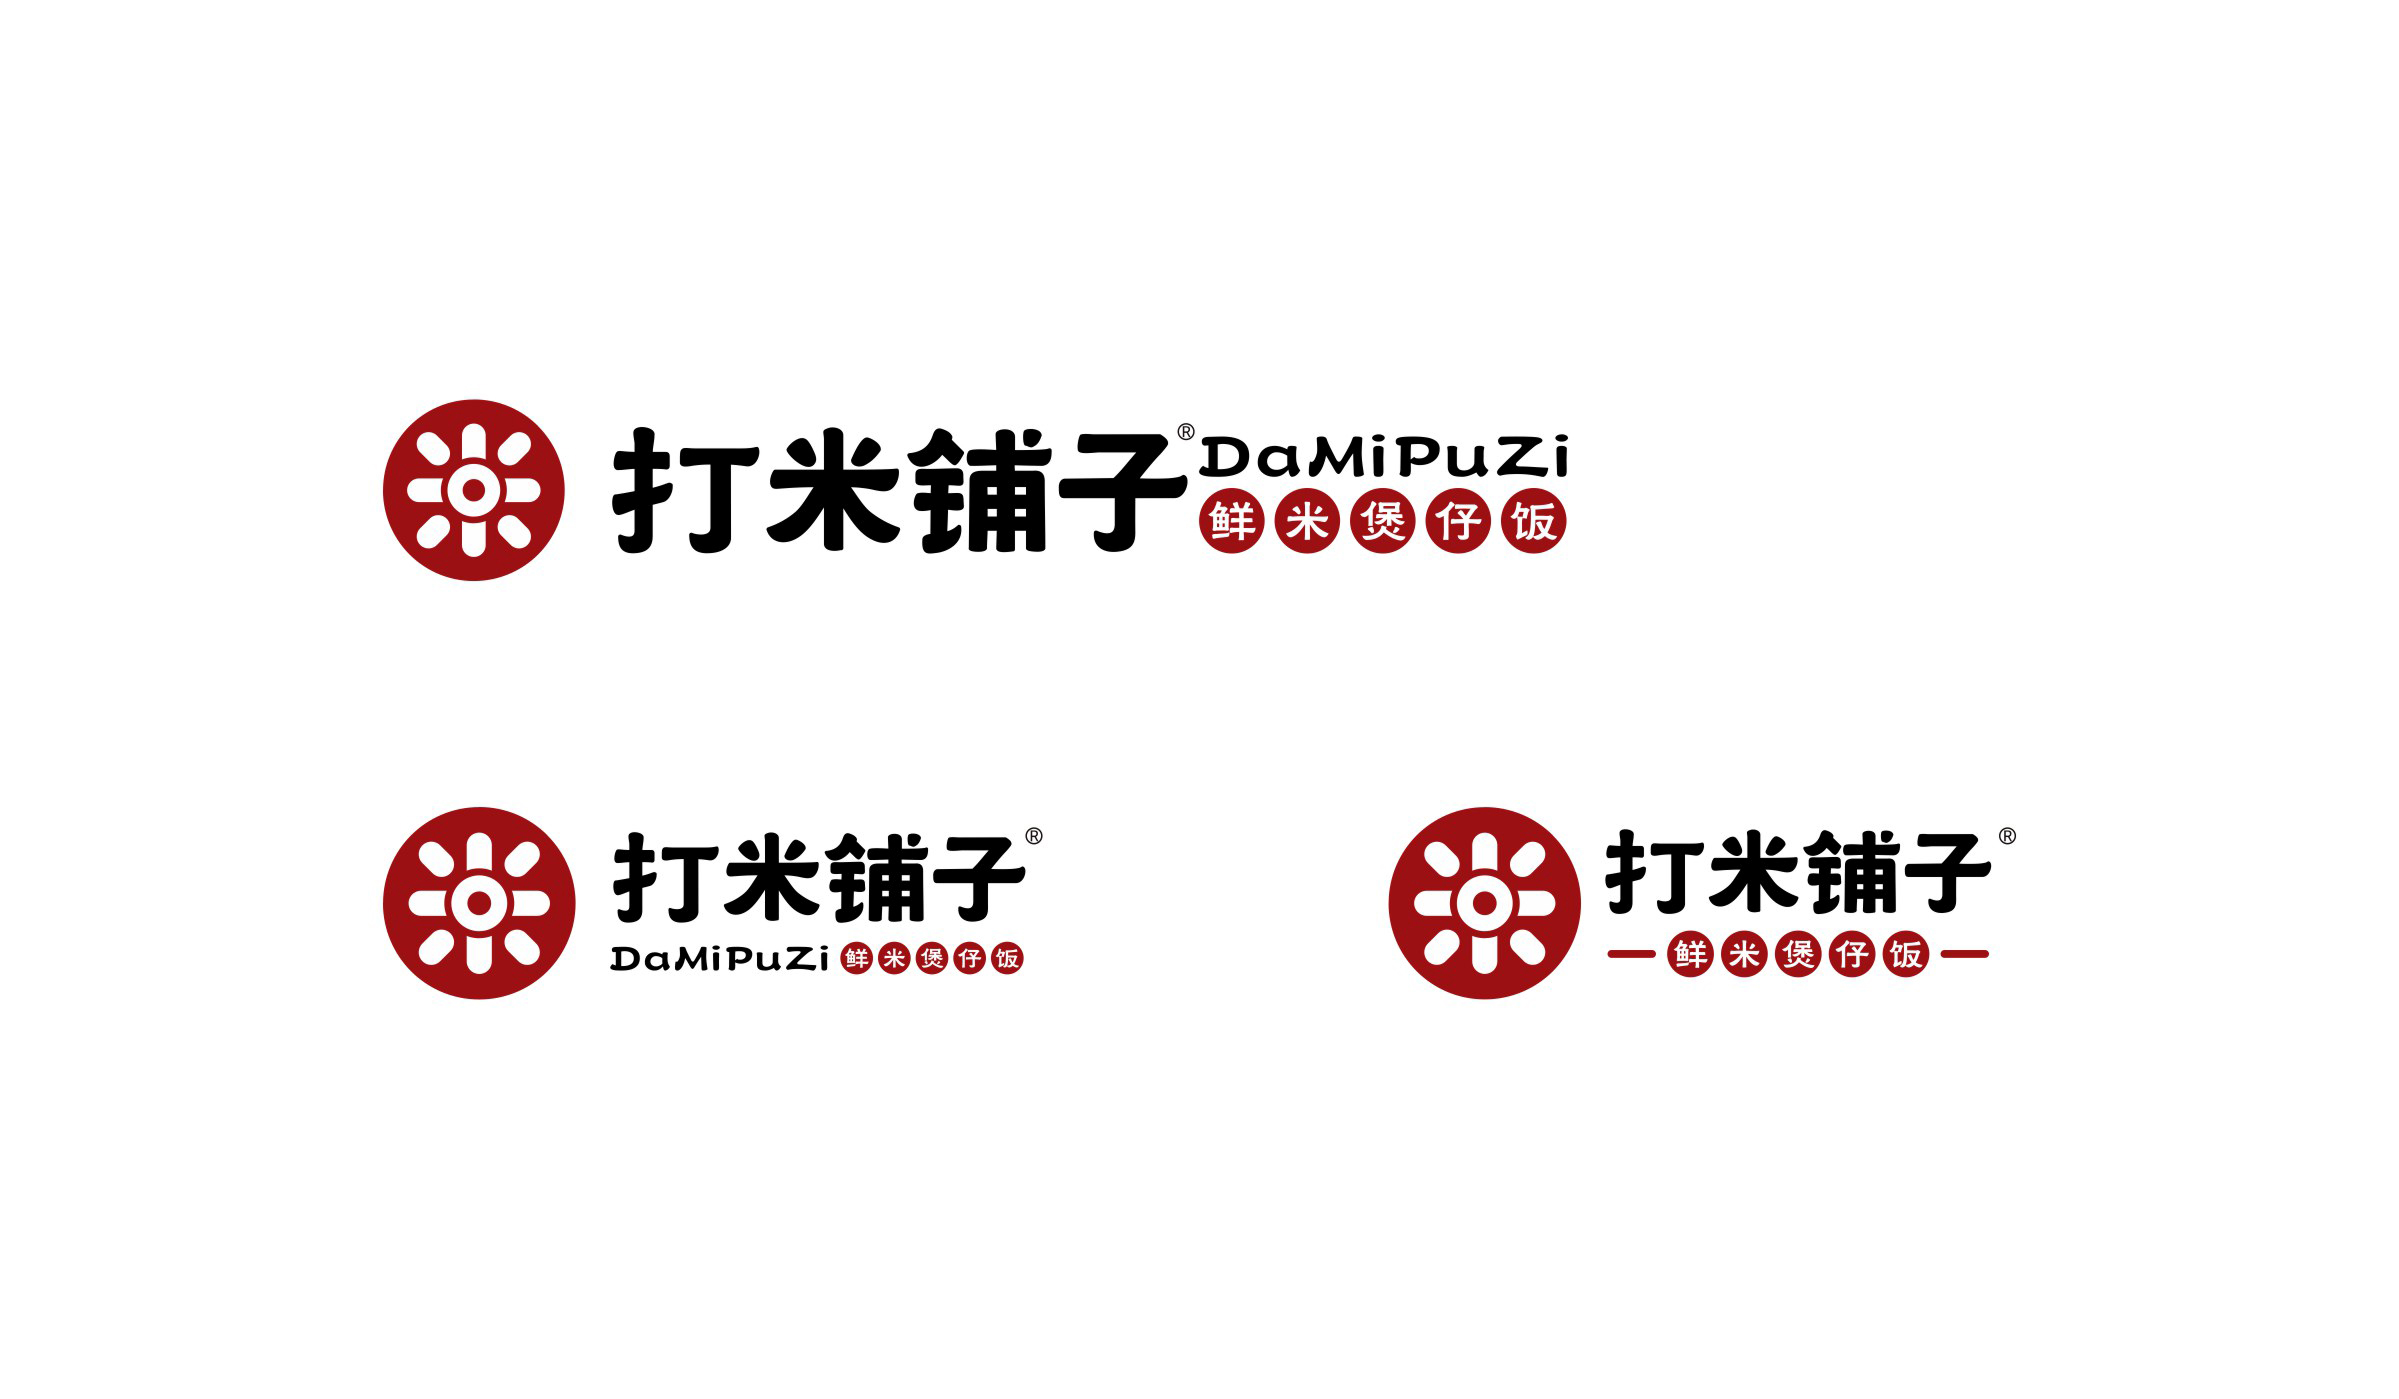 打米铺子品牌形象新logo组合形式